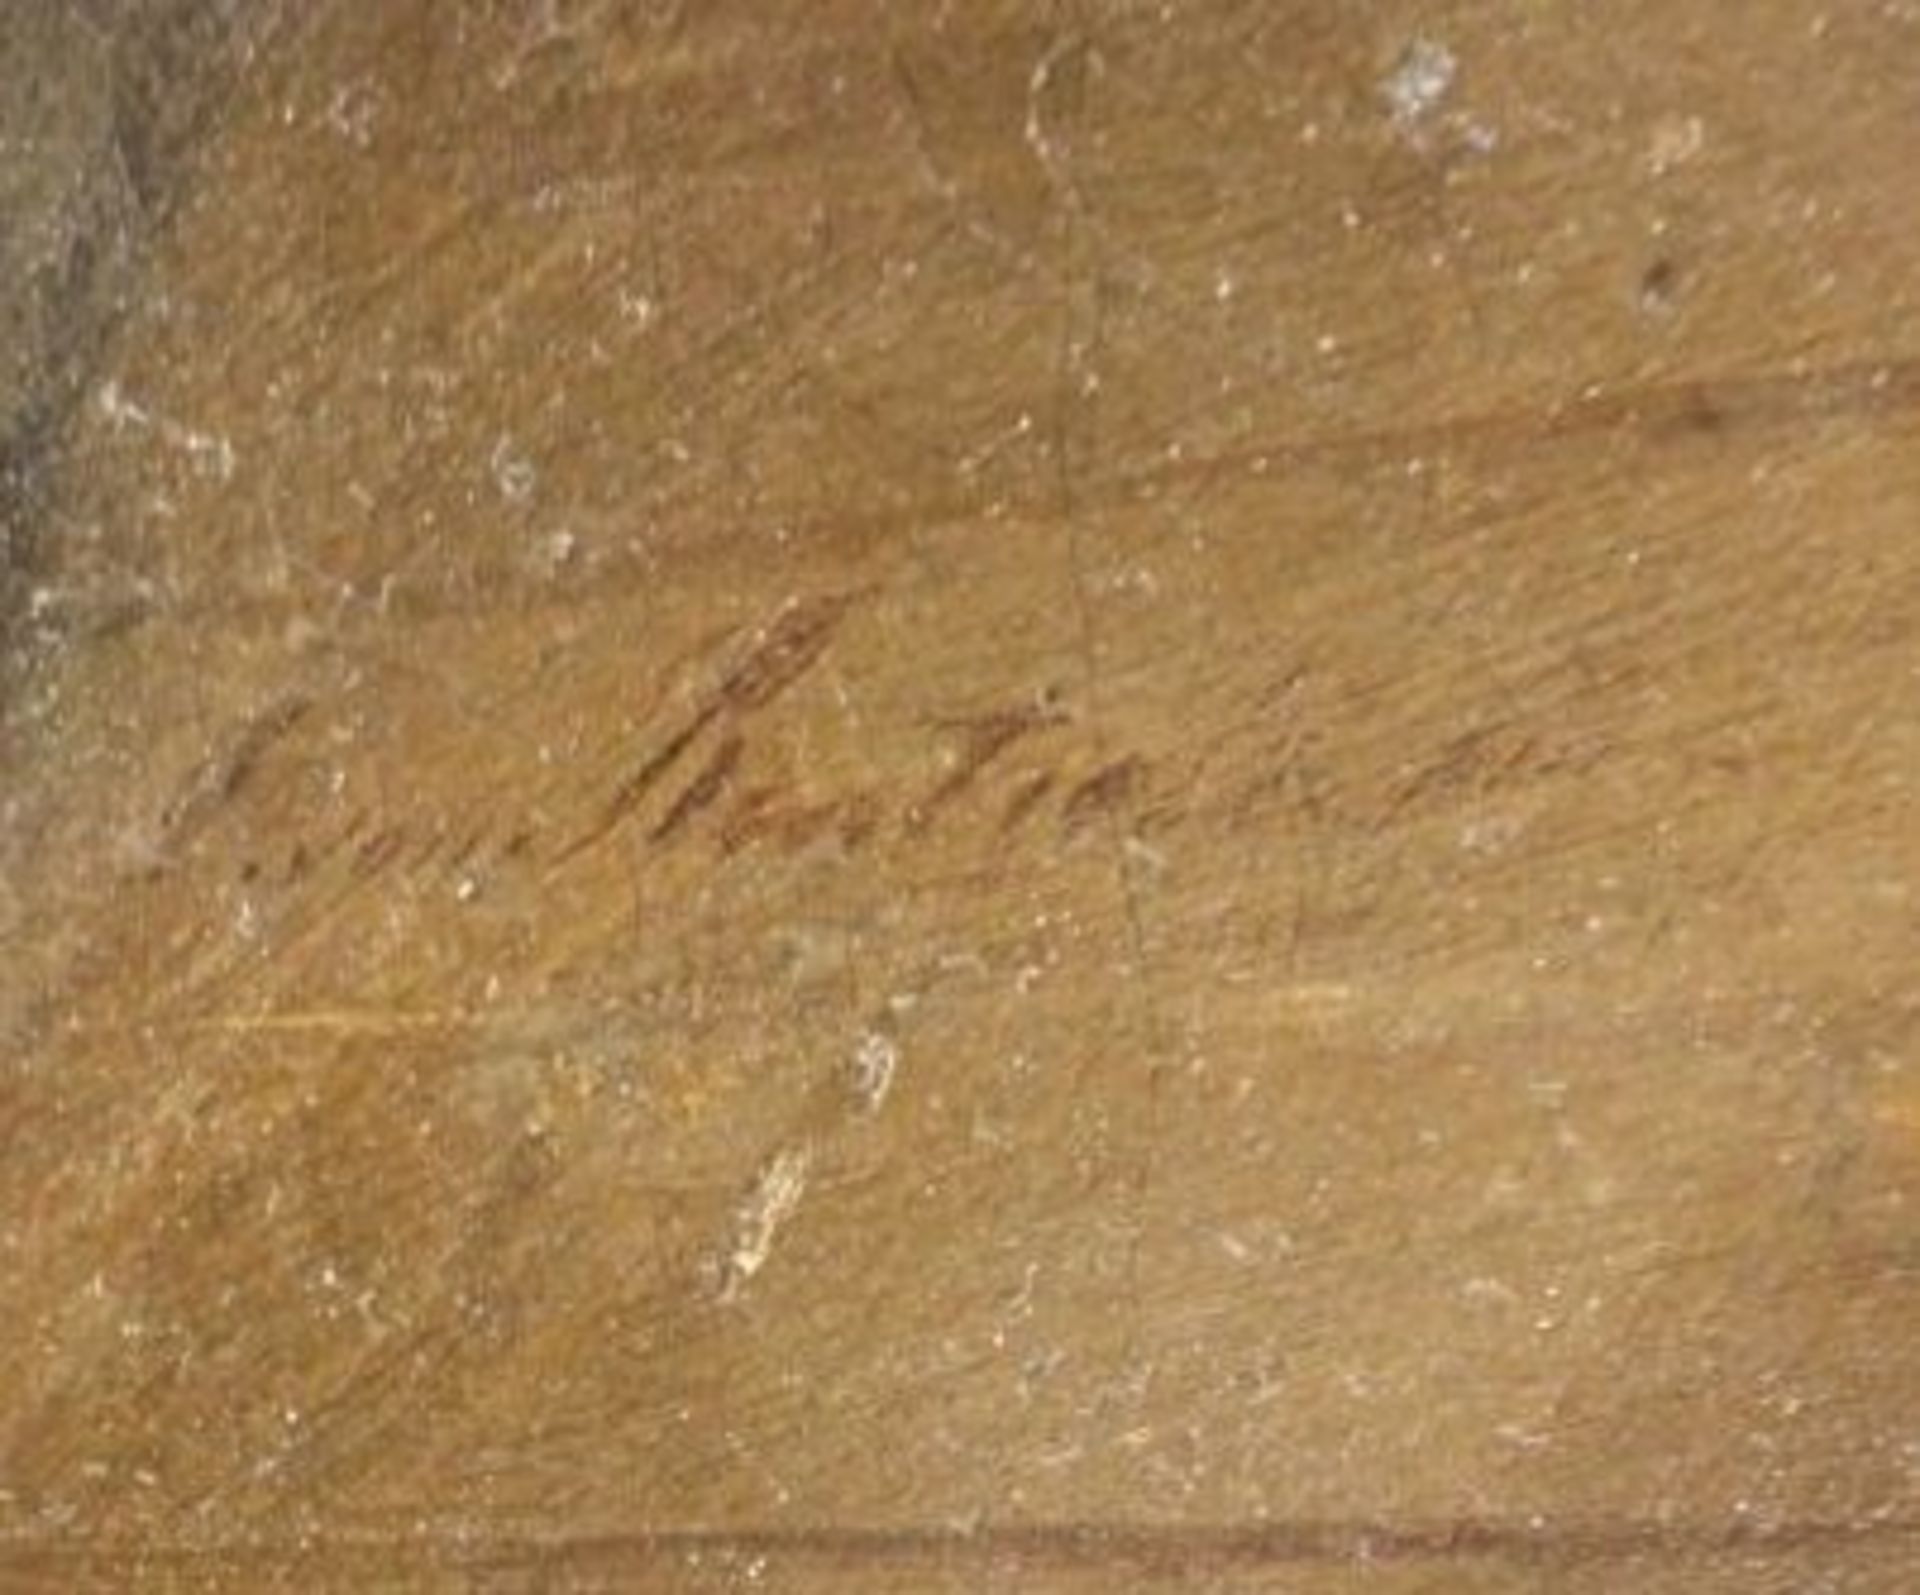 August VON RENTZELL (1810-1891) "Vater kommt heim", Öl/Leinwand, gerahmt, RG 54 x 61cm - Bild 2 aus 4